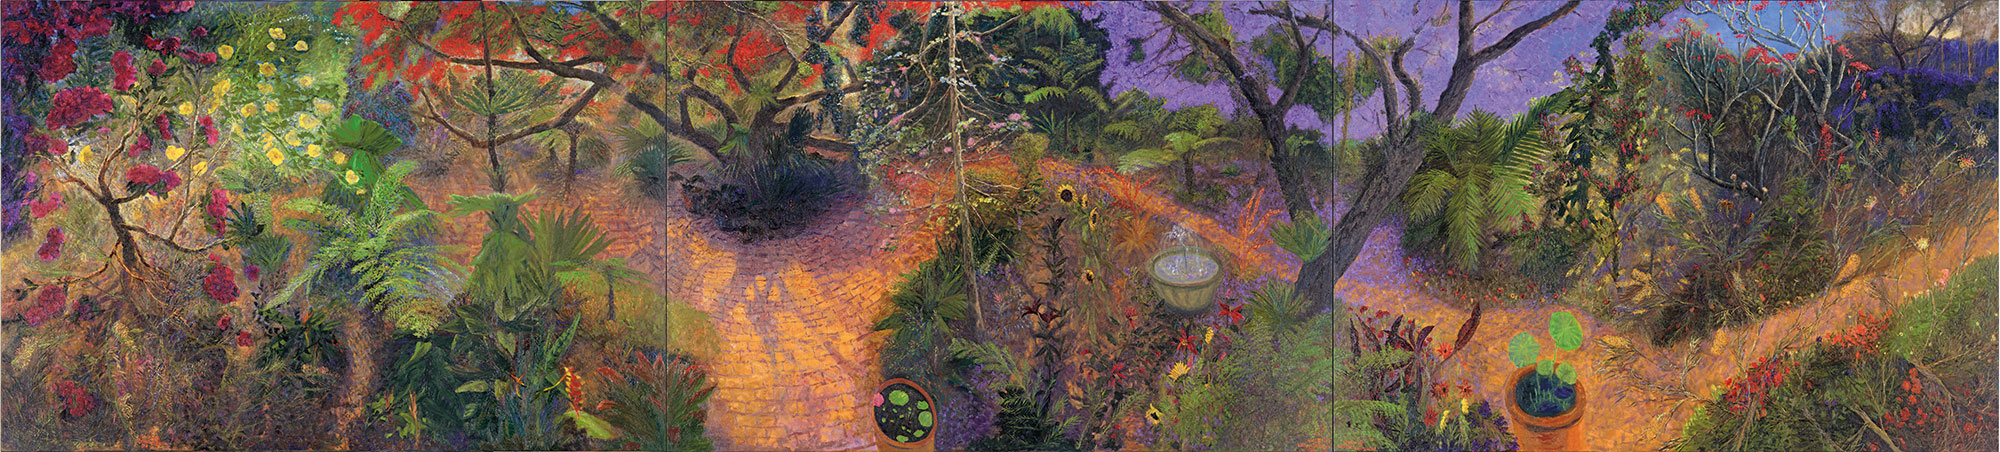 William ROBINSON 'The garden' (detail)